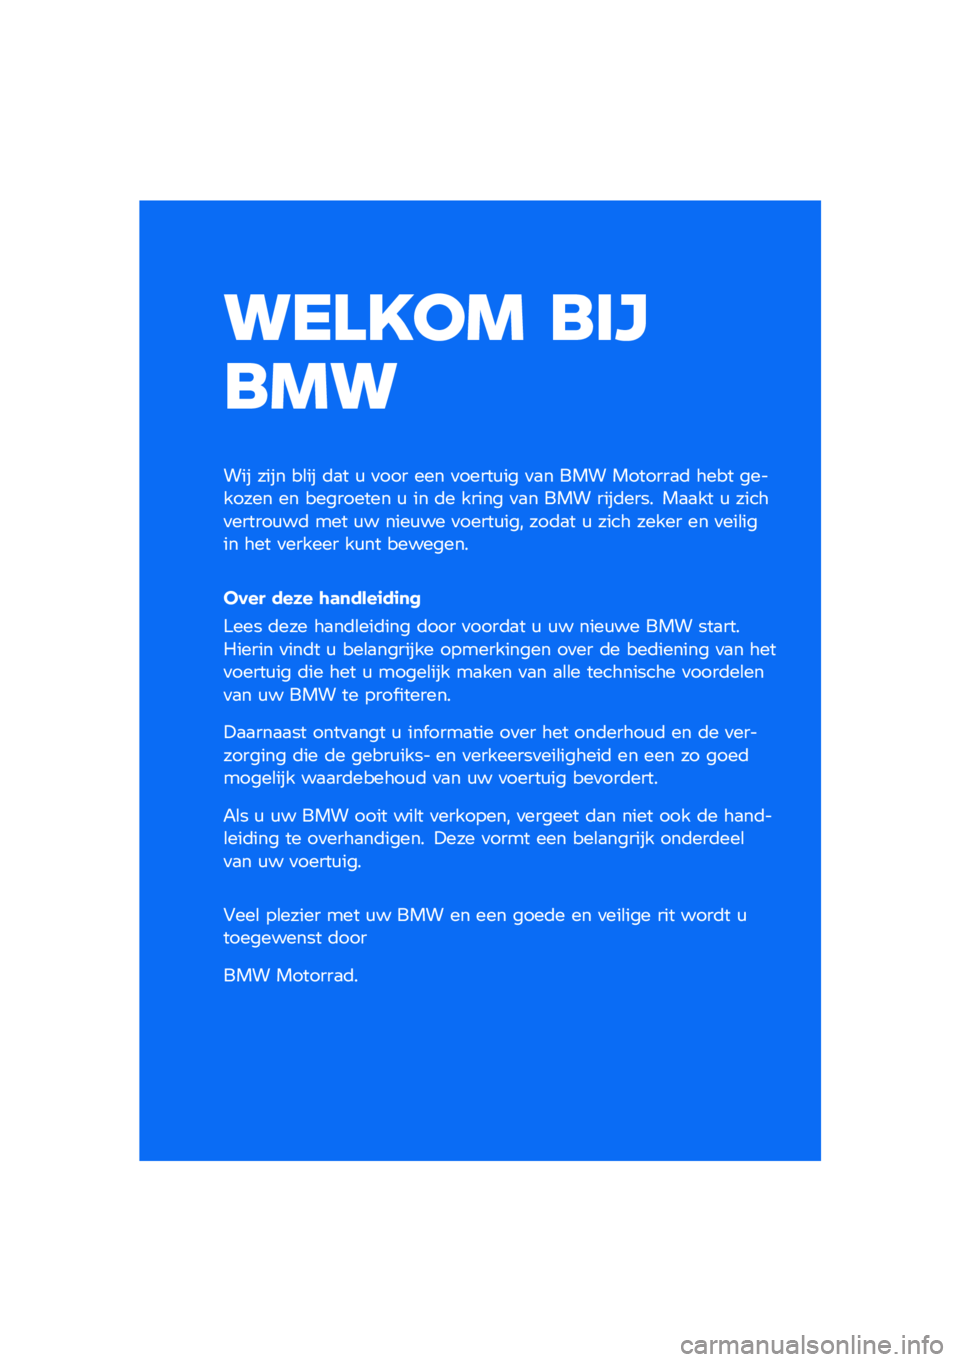 BMW MOTORRAD F 900 R 2020  Handleiding (in Dutch) ������ �\b�	�

�\b��
��� ���� ��\b�� �	�
� �\f �
��� ��� �
�����\f�� �
�
� ��� �������
�	 ���� �������� �� ��������� �\f �� �	� ���